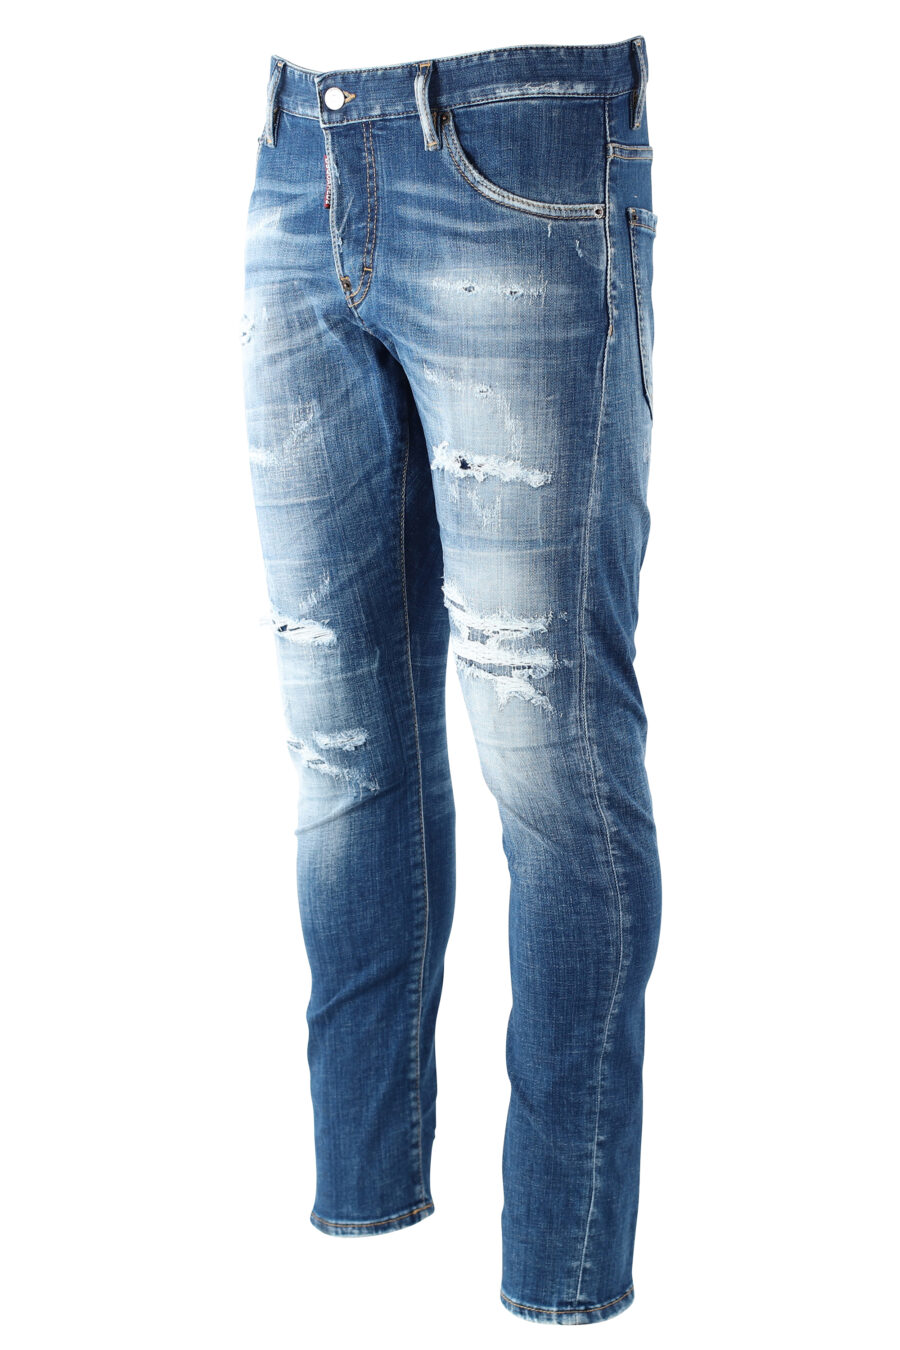 Jeans sexy twist denim "sexy twiste jean" bleu usé avec des déchirures - IMG 9694